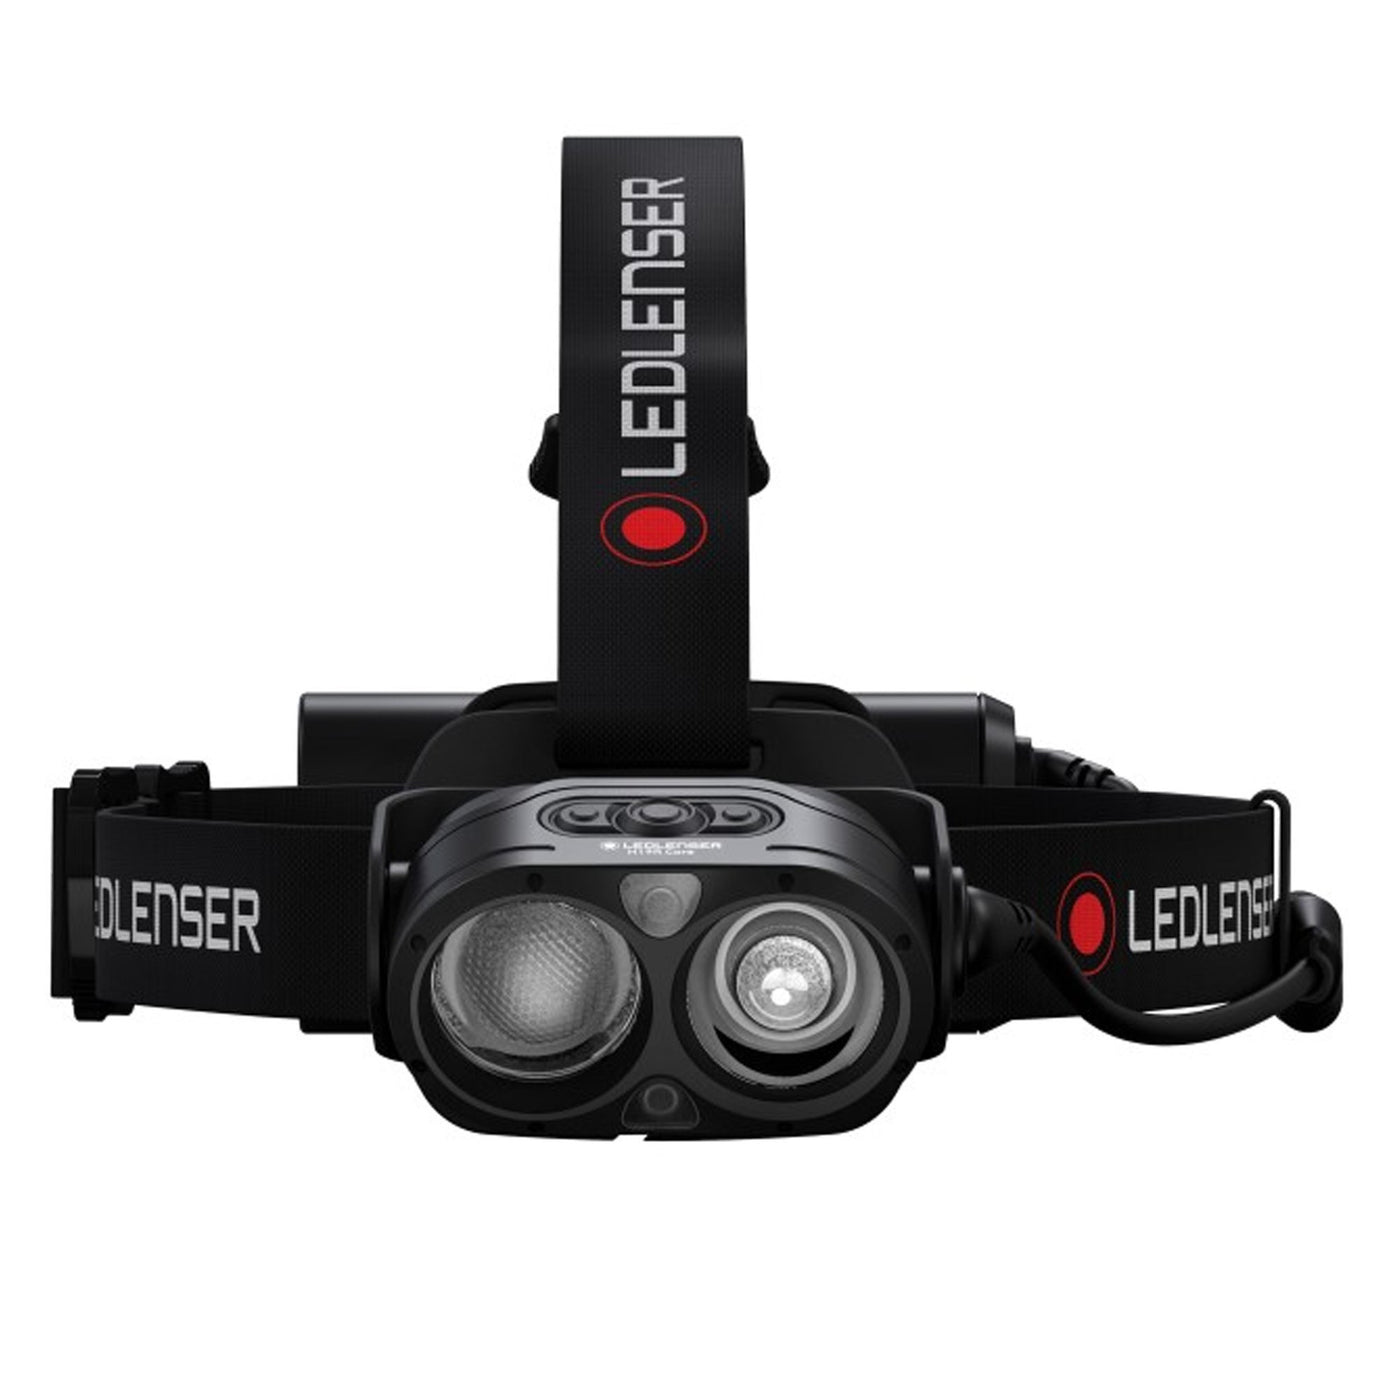 Ledlenser H19R Core 3500Lumen Rechargeable Headlamp